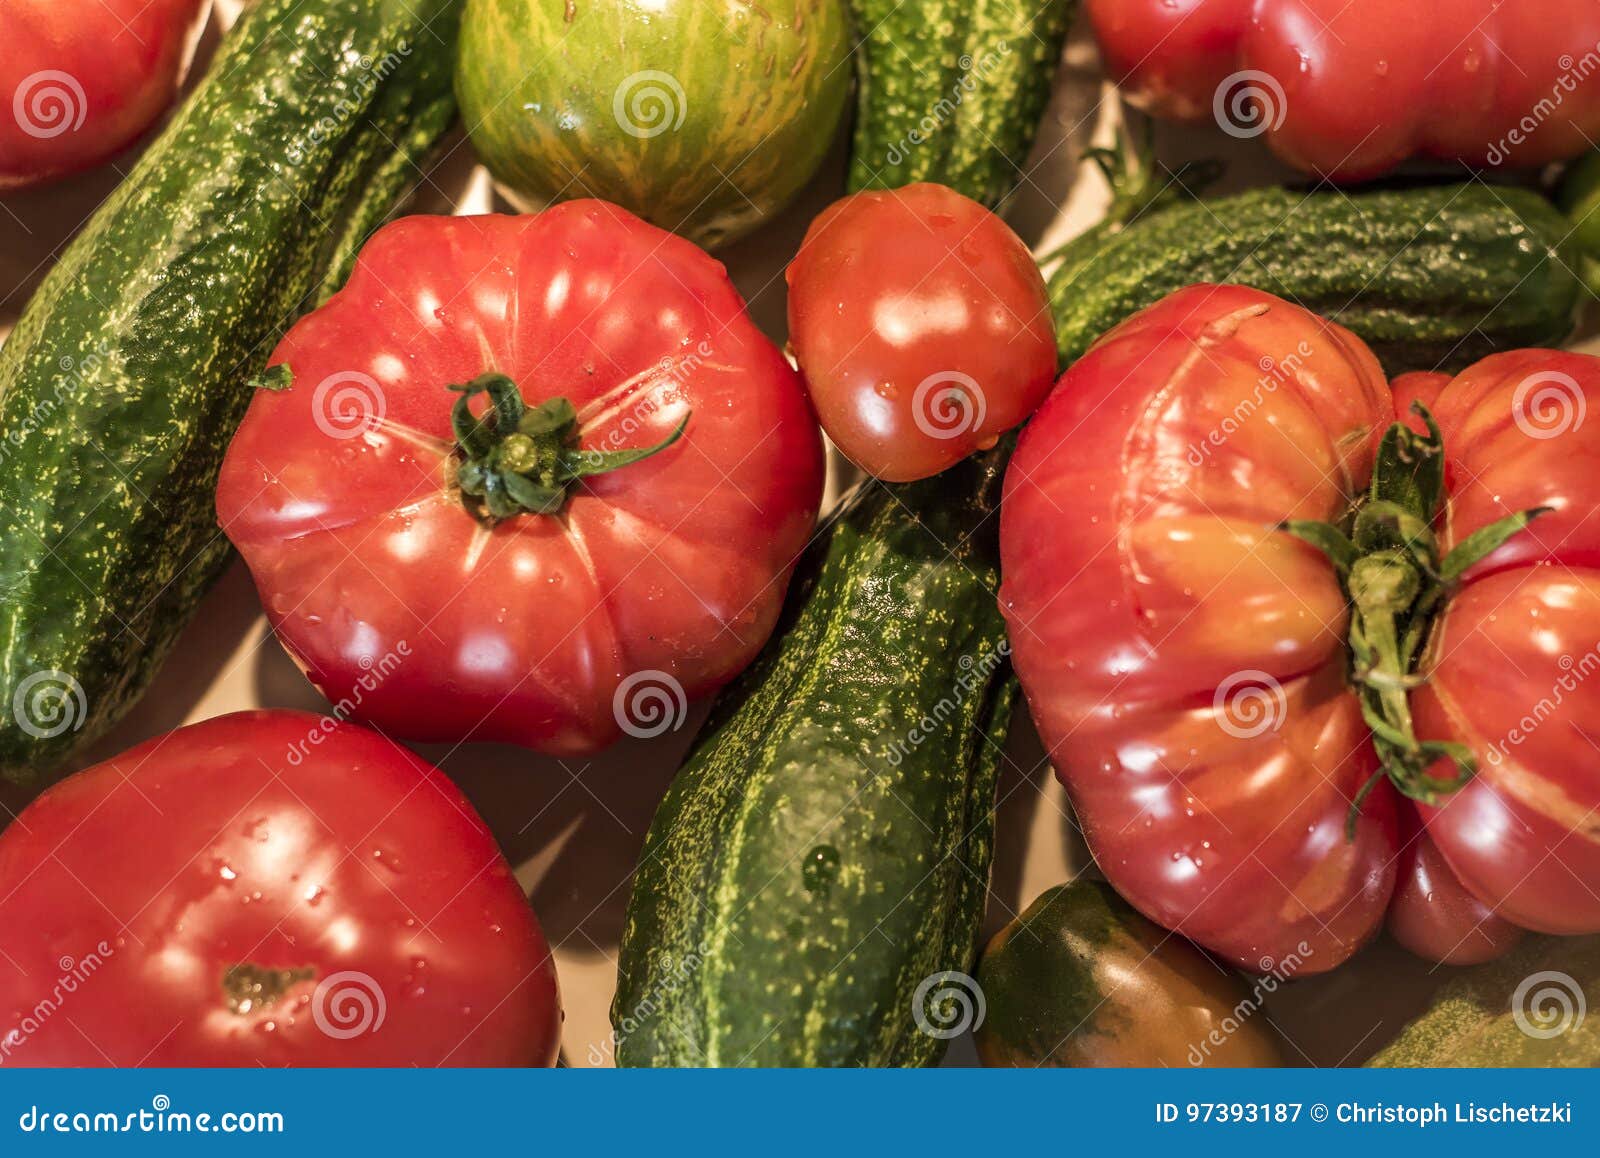 Tomatoe und Gurke auf Erzeugnisdeutschland-Makronahaufnahme des organischen Biohinterhofes des Holztischs gesunder im Freien